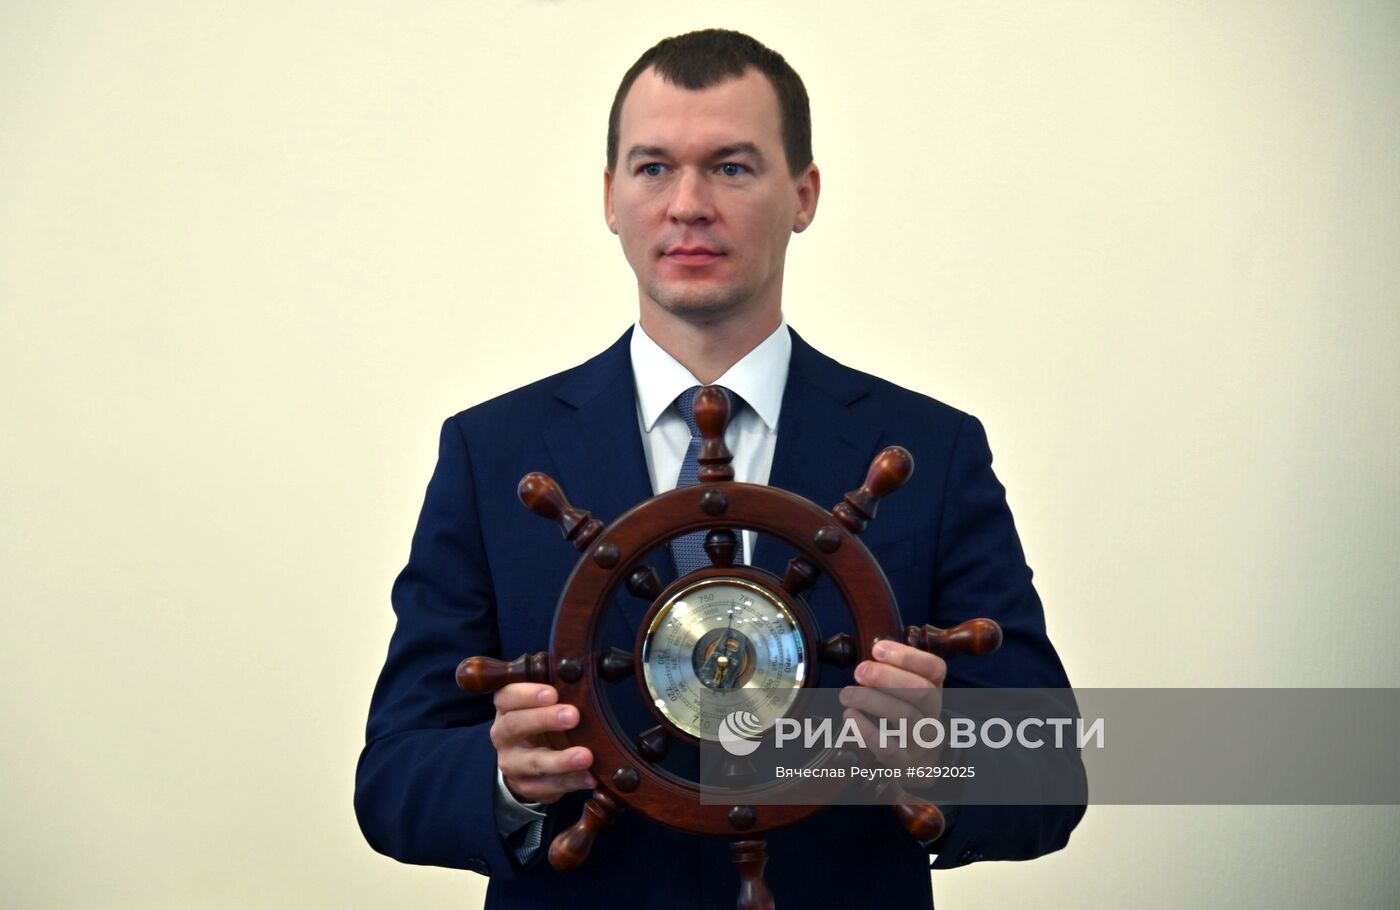 Представление врио губернатора Хабаровского края М. Дегтярева